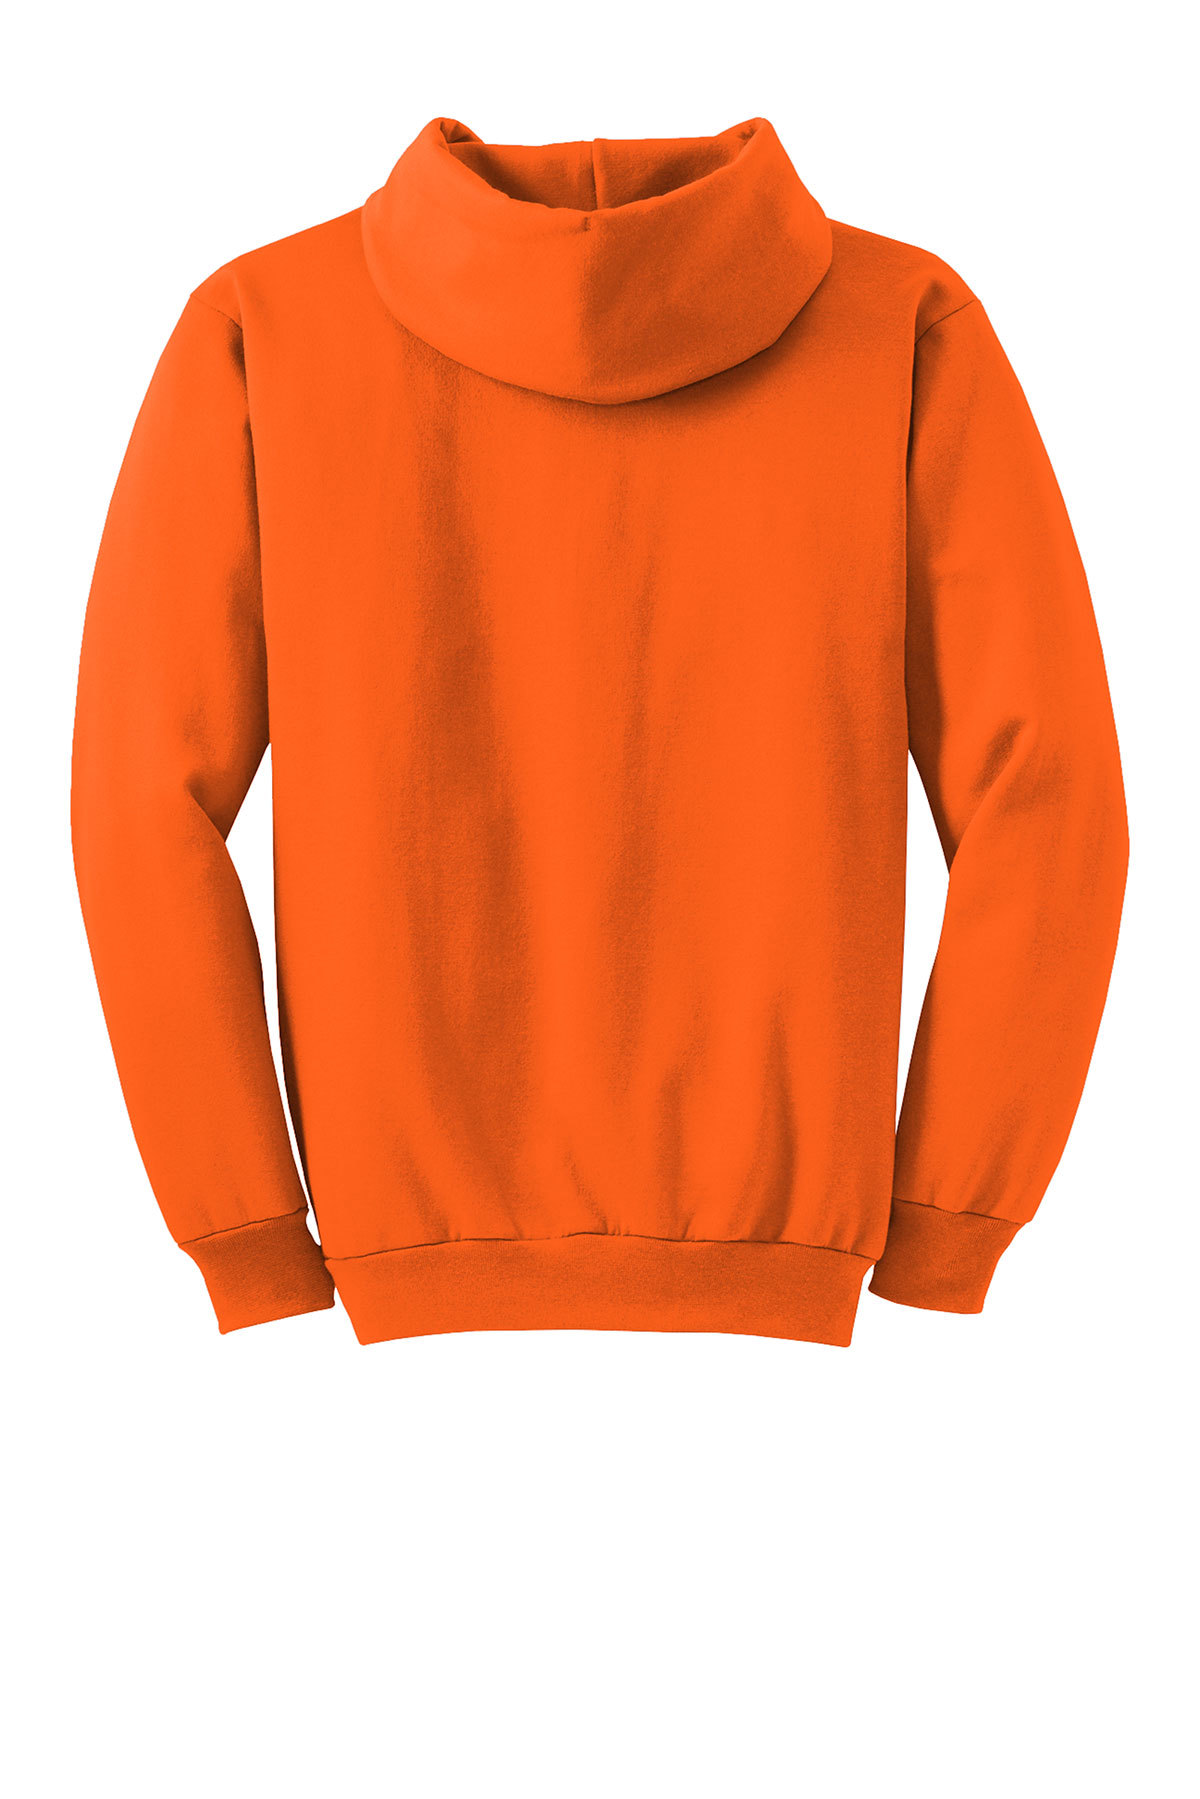 Skeeter Safety Orange Hoodie X-Large 